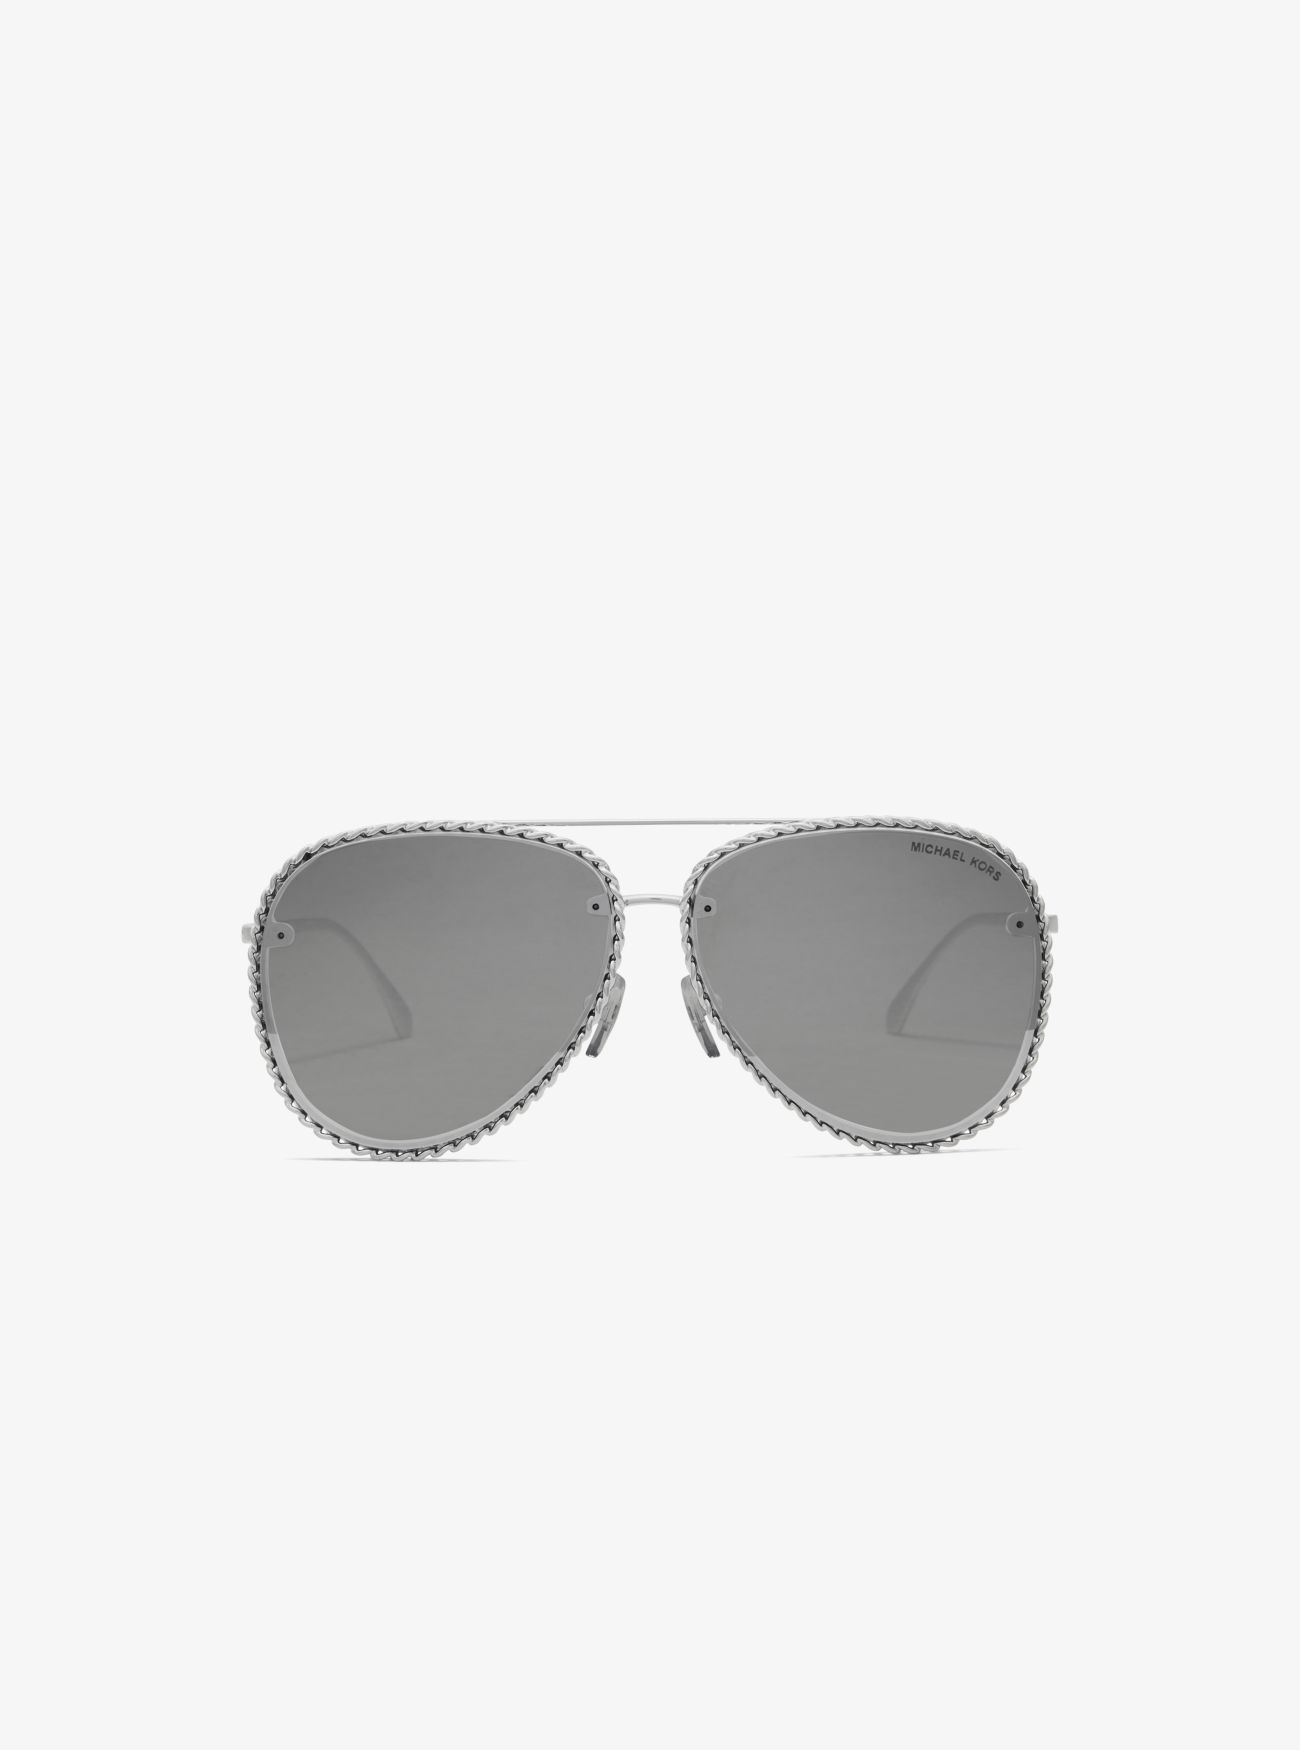 MK Portofino Sunglasses - Silver - Michael Kors